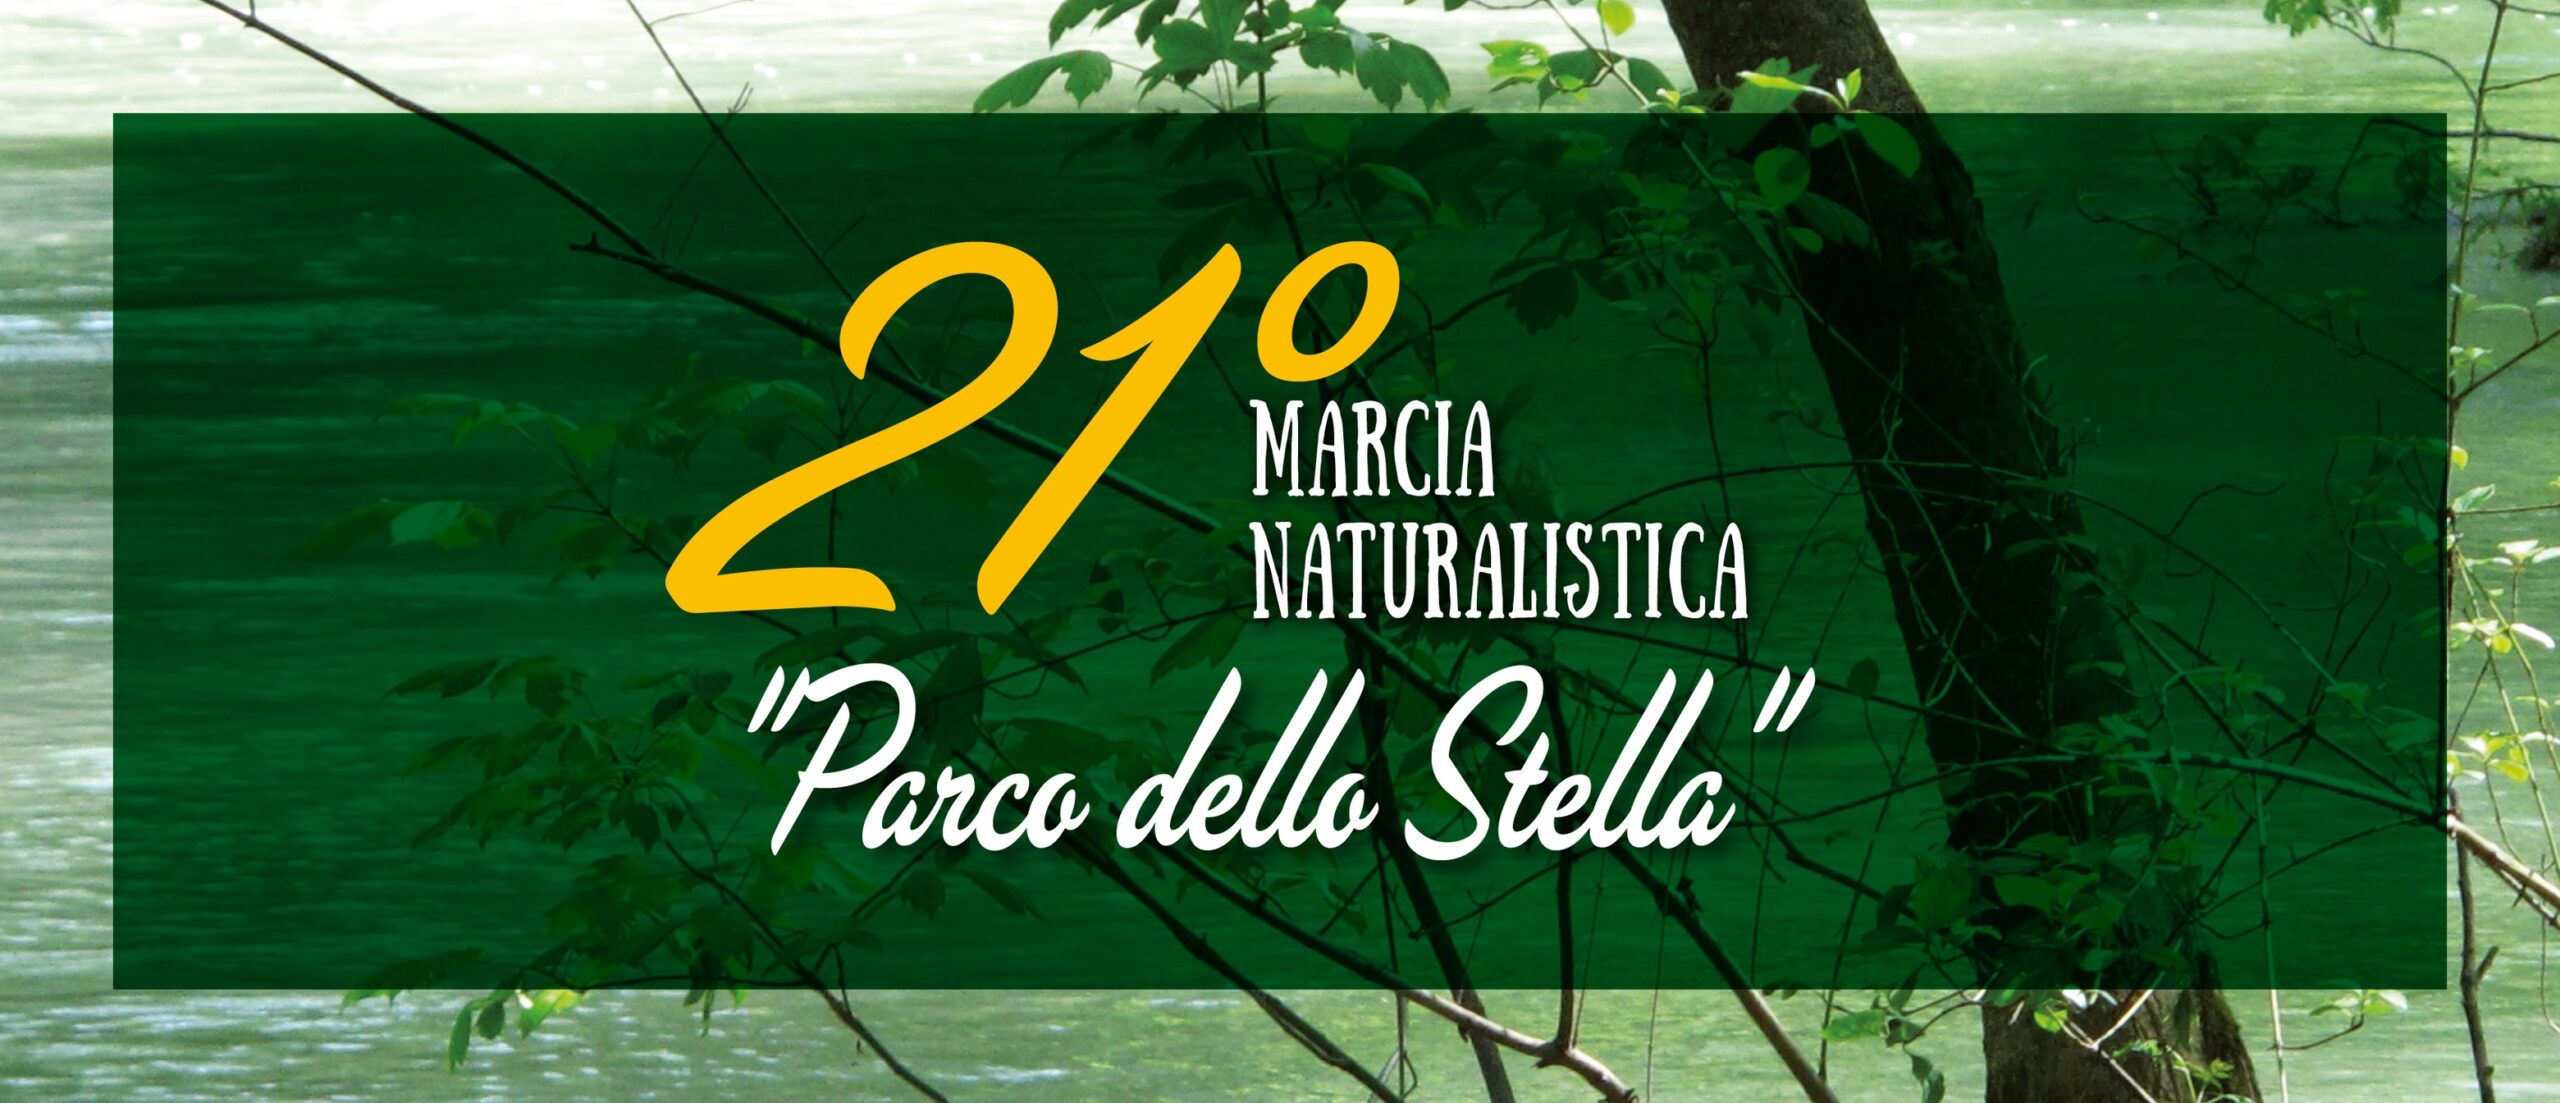 21° Marcia Naturalistica Parco dello Stella